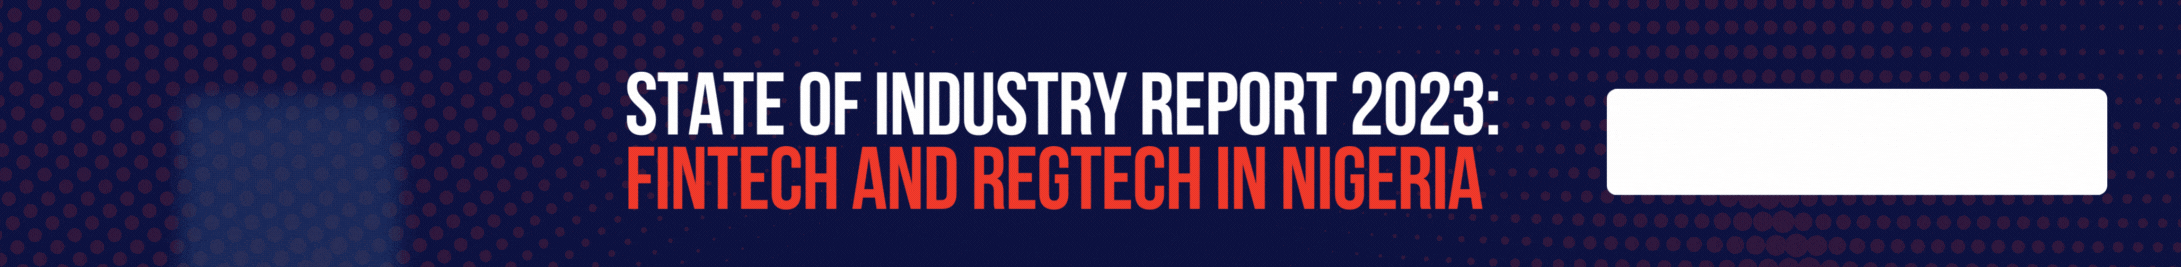 State of Fintech & Regtech Reports